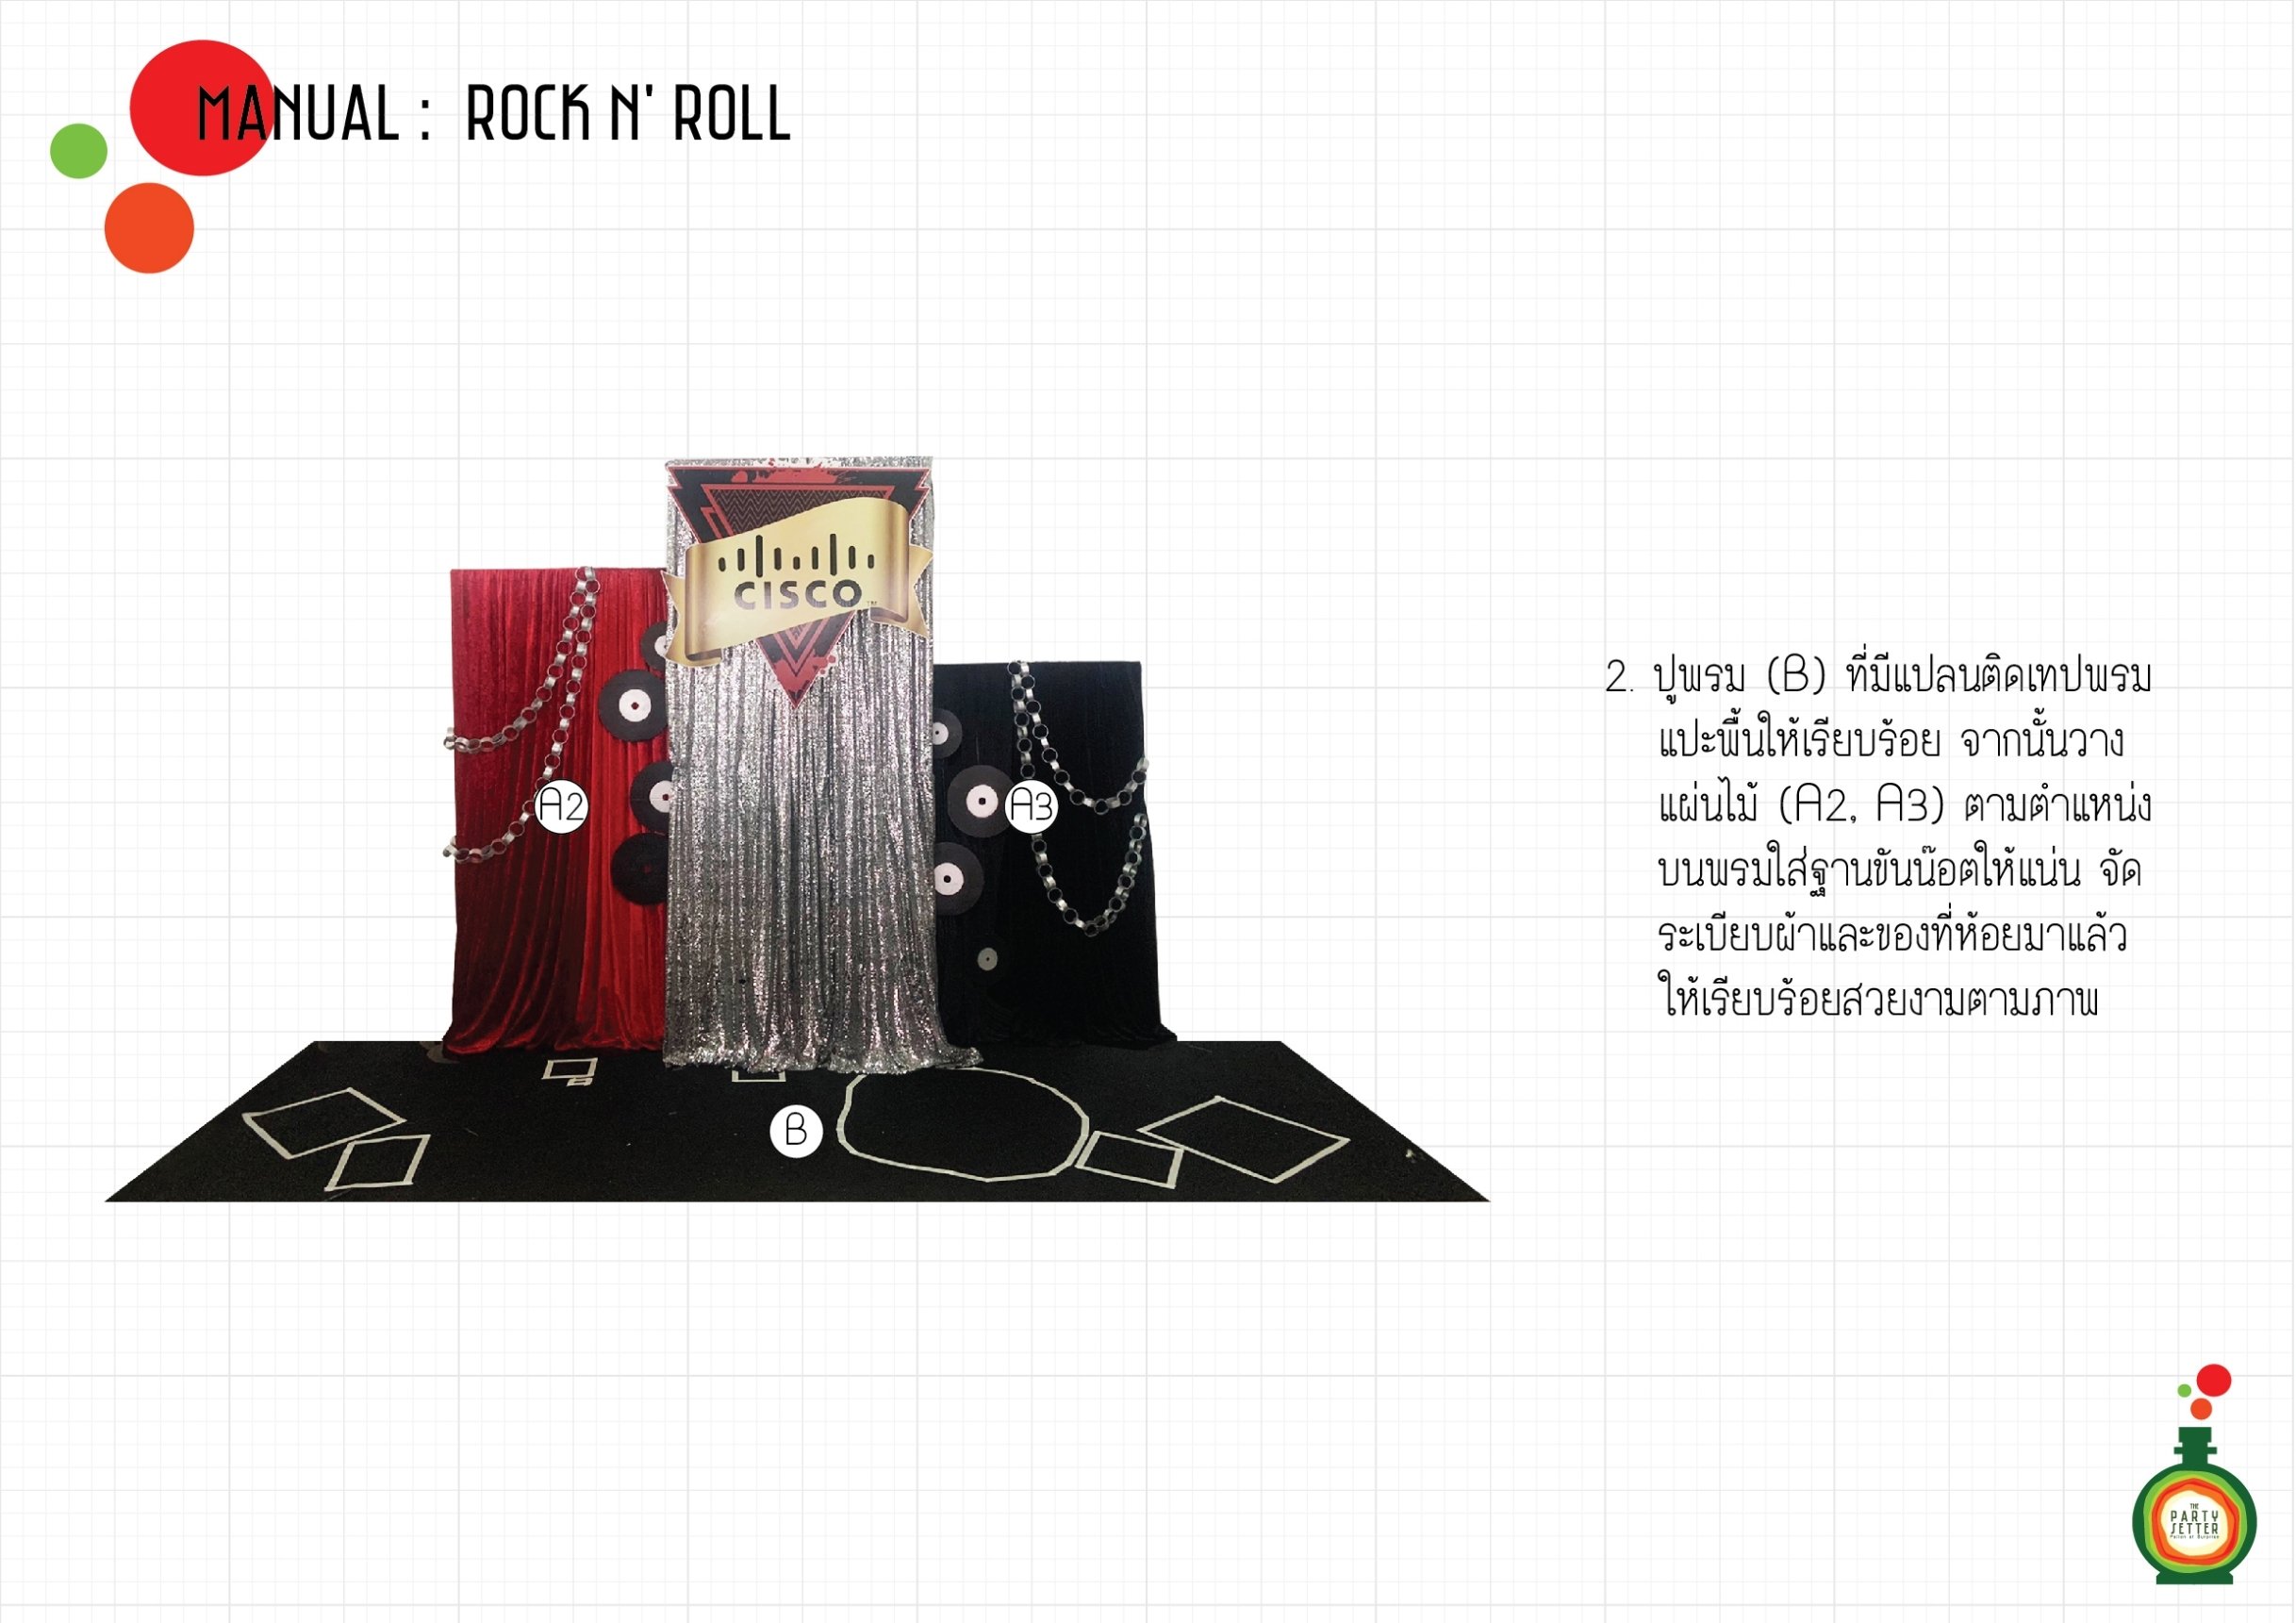 Manual_Rock n' Roll_02-01.jpg